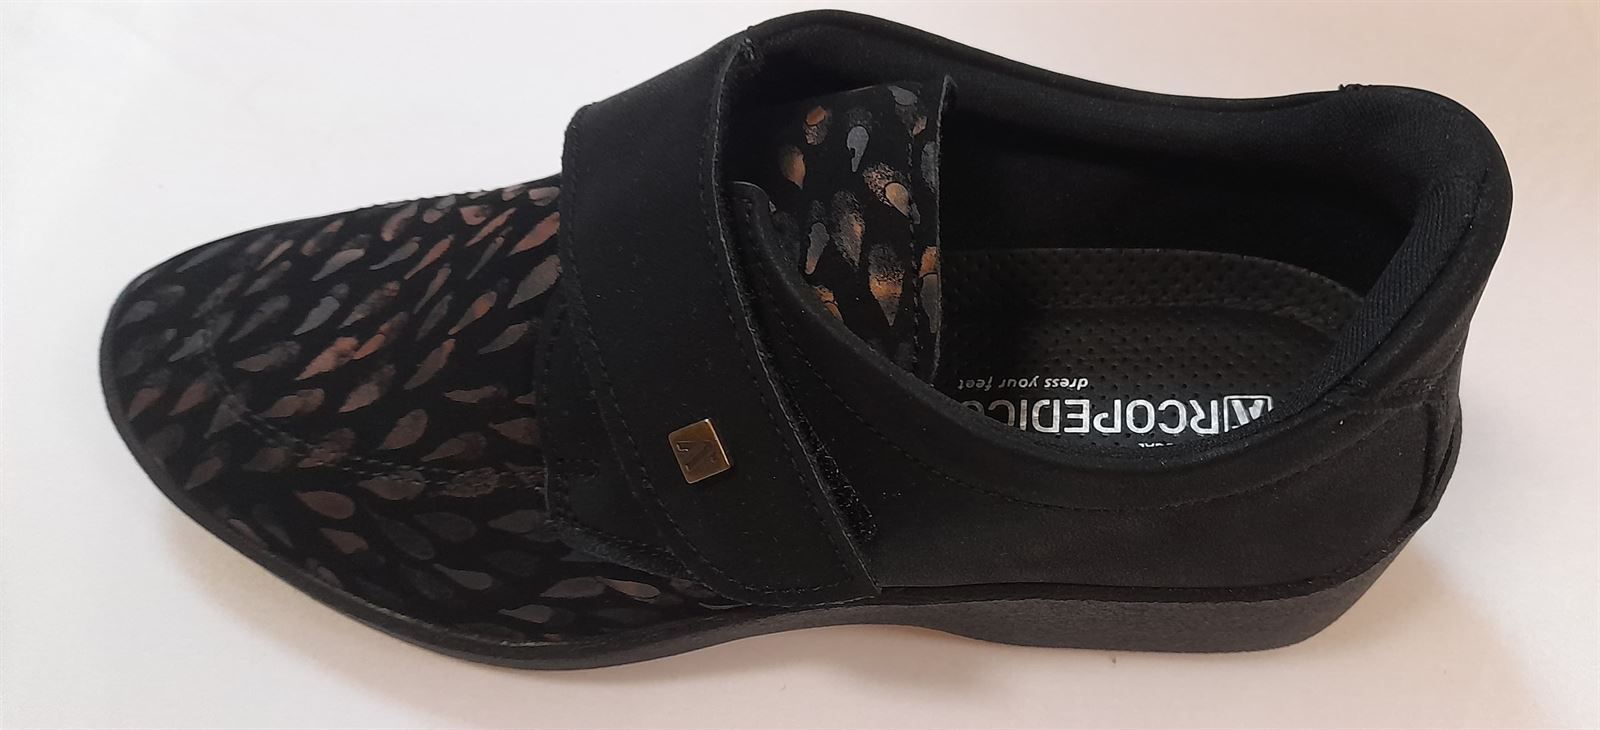 Zapato negro L33 - Imagen 3